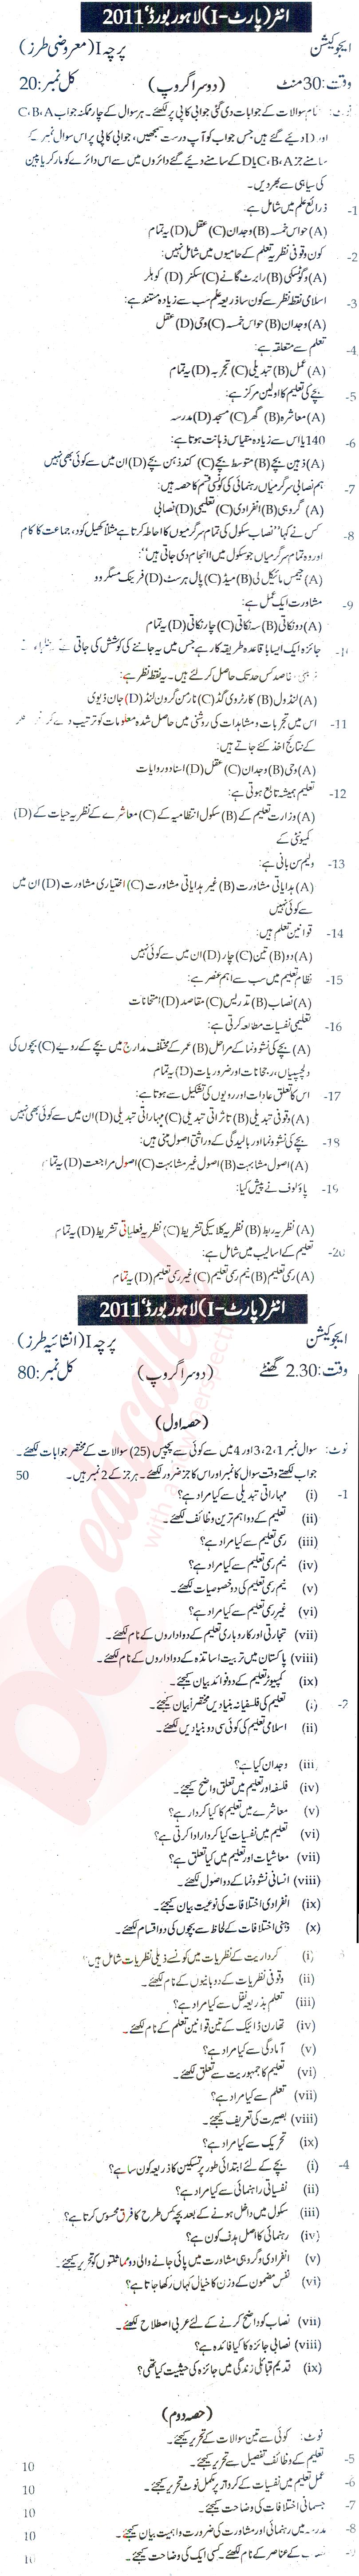 Education FA Part 1 Past Paper Group 2 BISE Lahore 2011